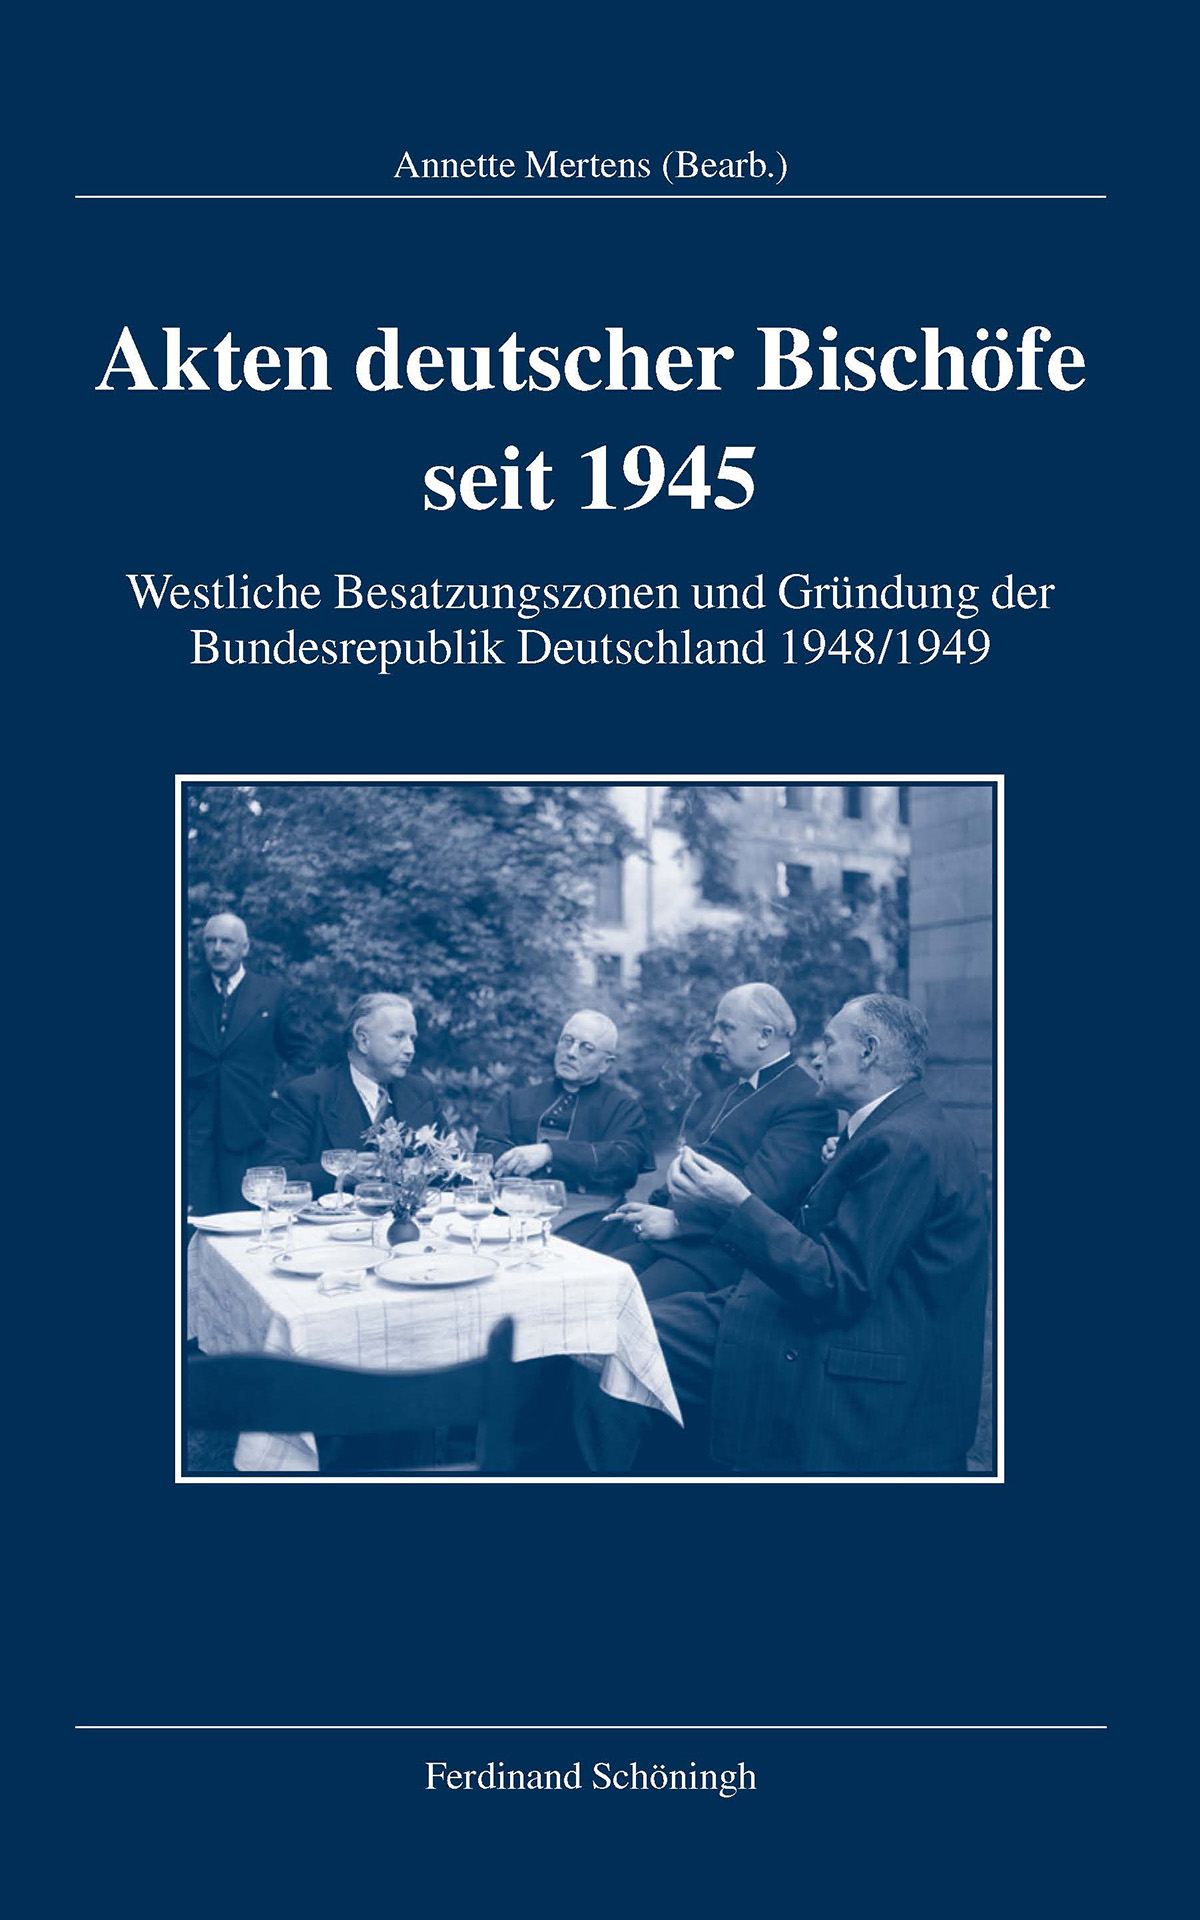 Akten deutscher Bischöfe seit 1945. Westliche Besatzungszonen und Gründung der Bundesrepublik Deutschland 1948/1949, bearb. v. Annette Mertens.